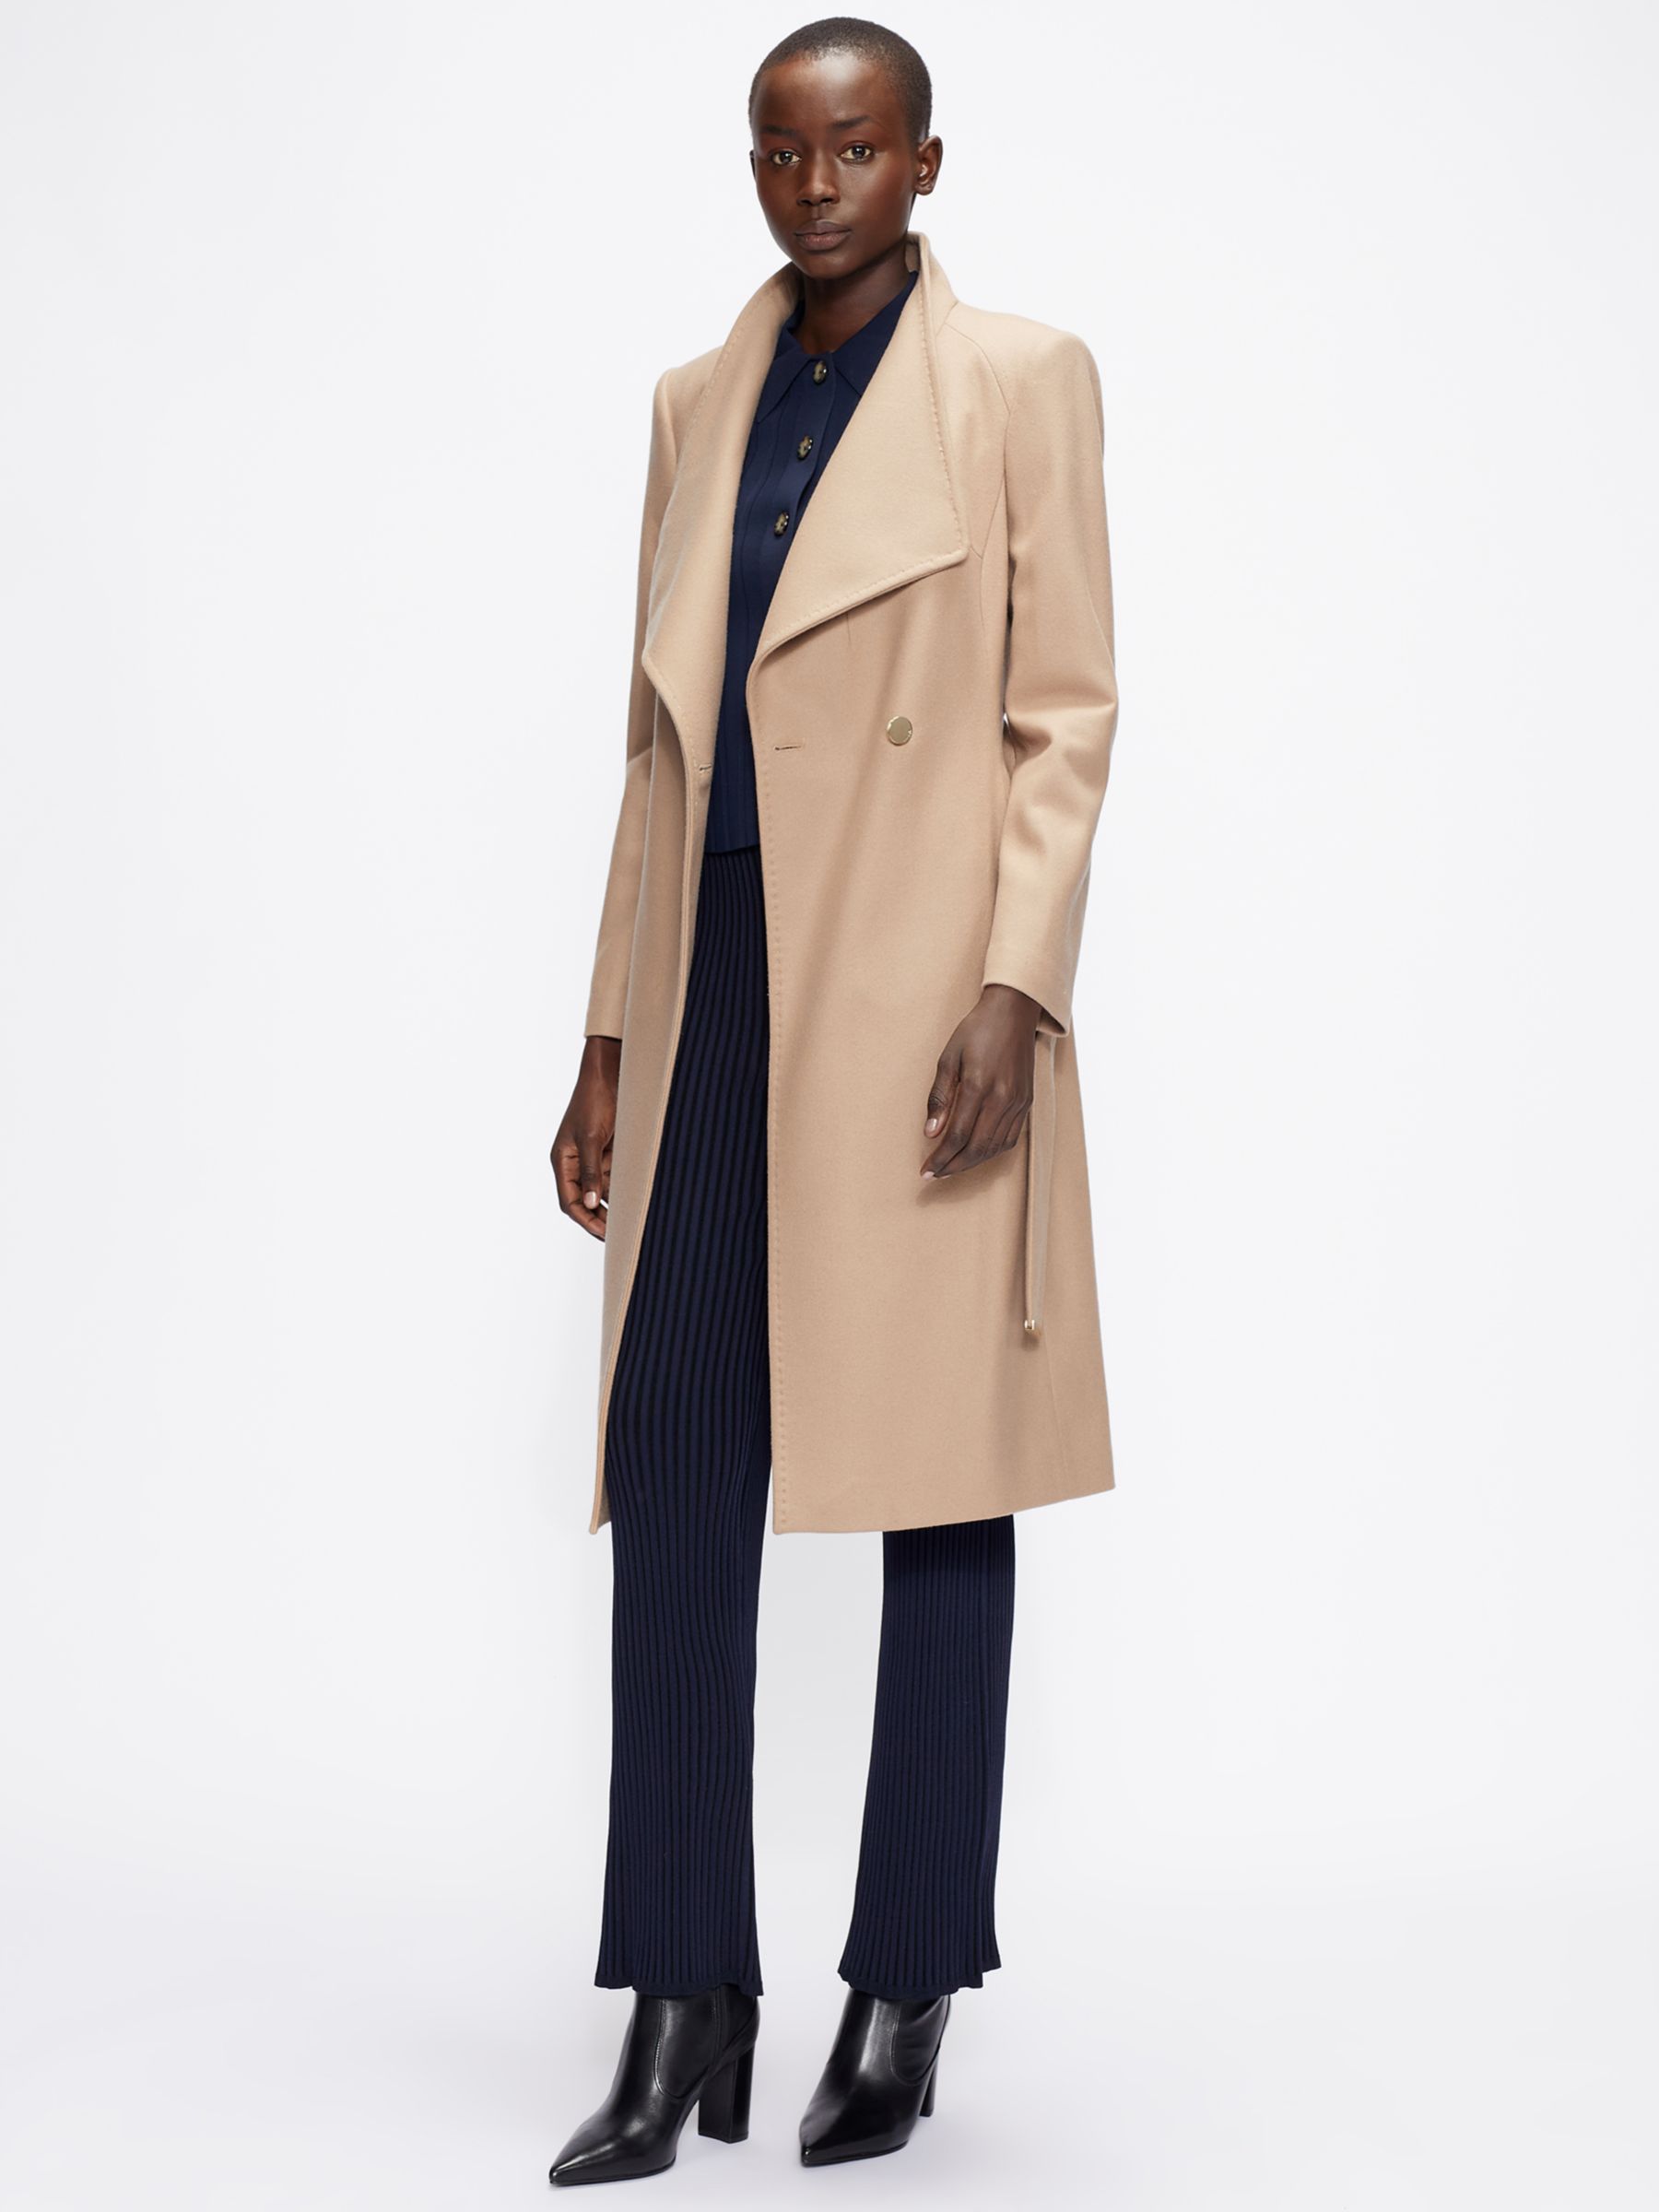 discount 56% Pieces Long coat WOMEN FASHION Coats Casual Brown M 